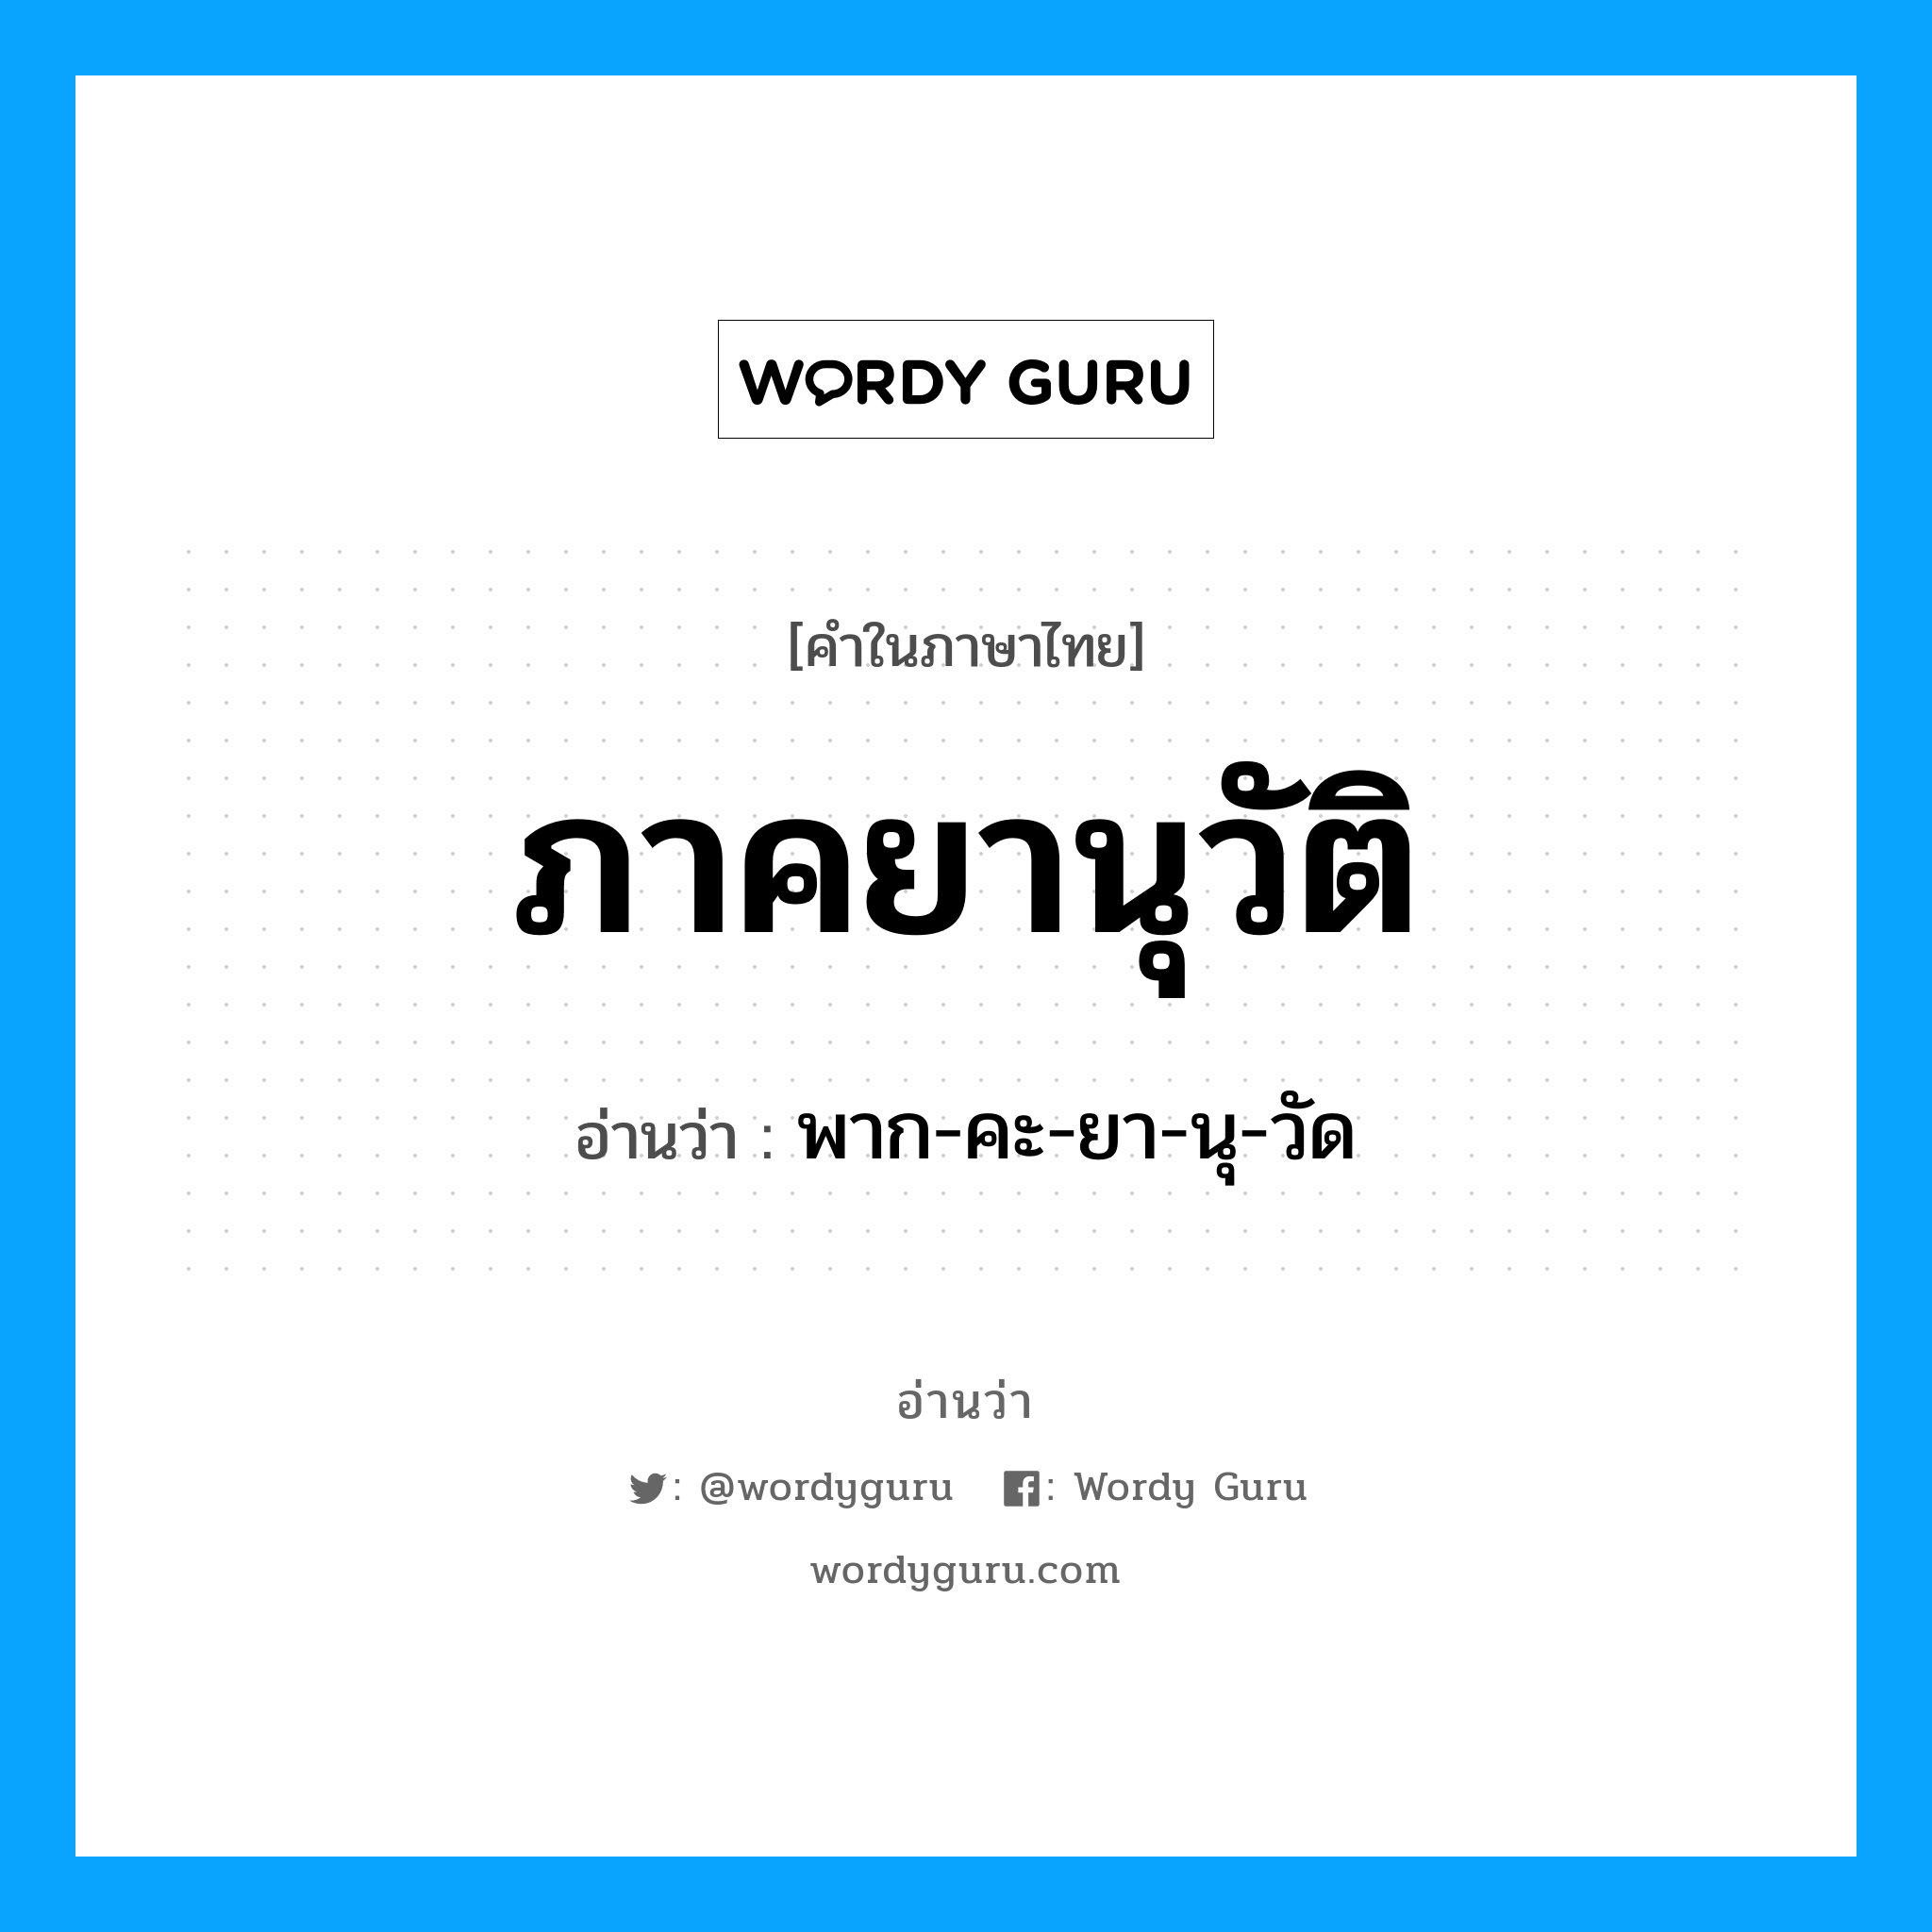 พาก-คะ-ยา-นุ-วัด เป็นคำอ่านของคำไหน?, คำในภาษาไทย พาก-คะ-ยา-นุ-วัด อ่านว่า ภาคยานุวัติ